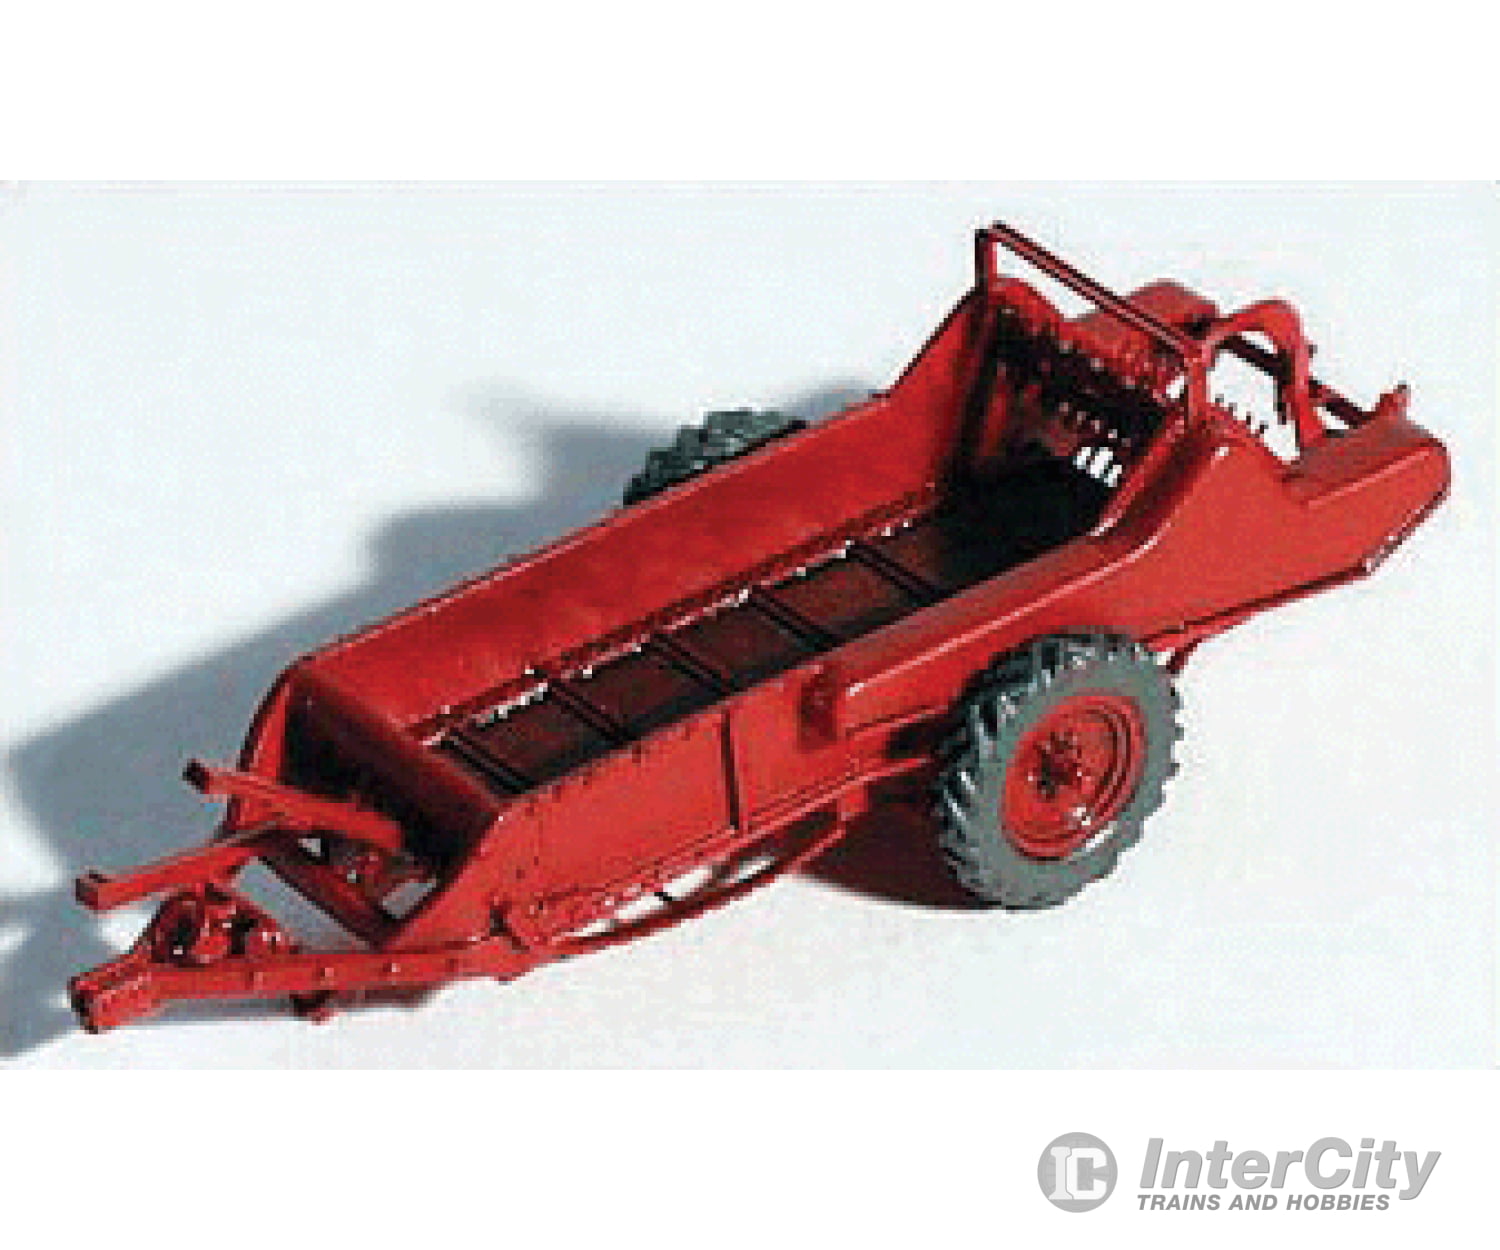 Ghq Ho 60002 1950S Red Manure Spreader - Kit Cars & Trucks